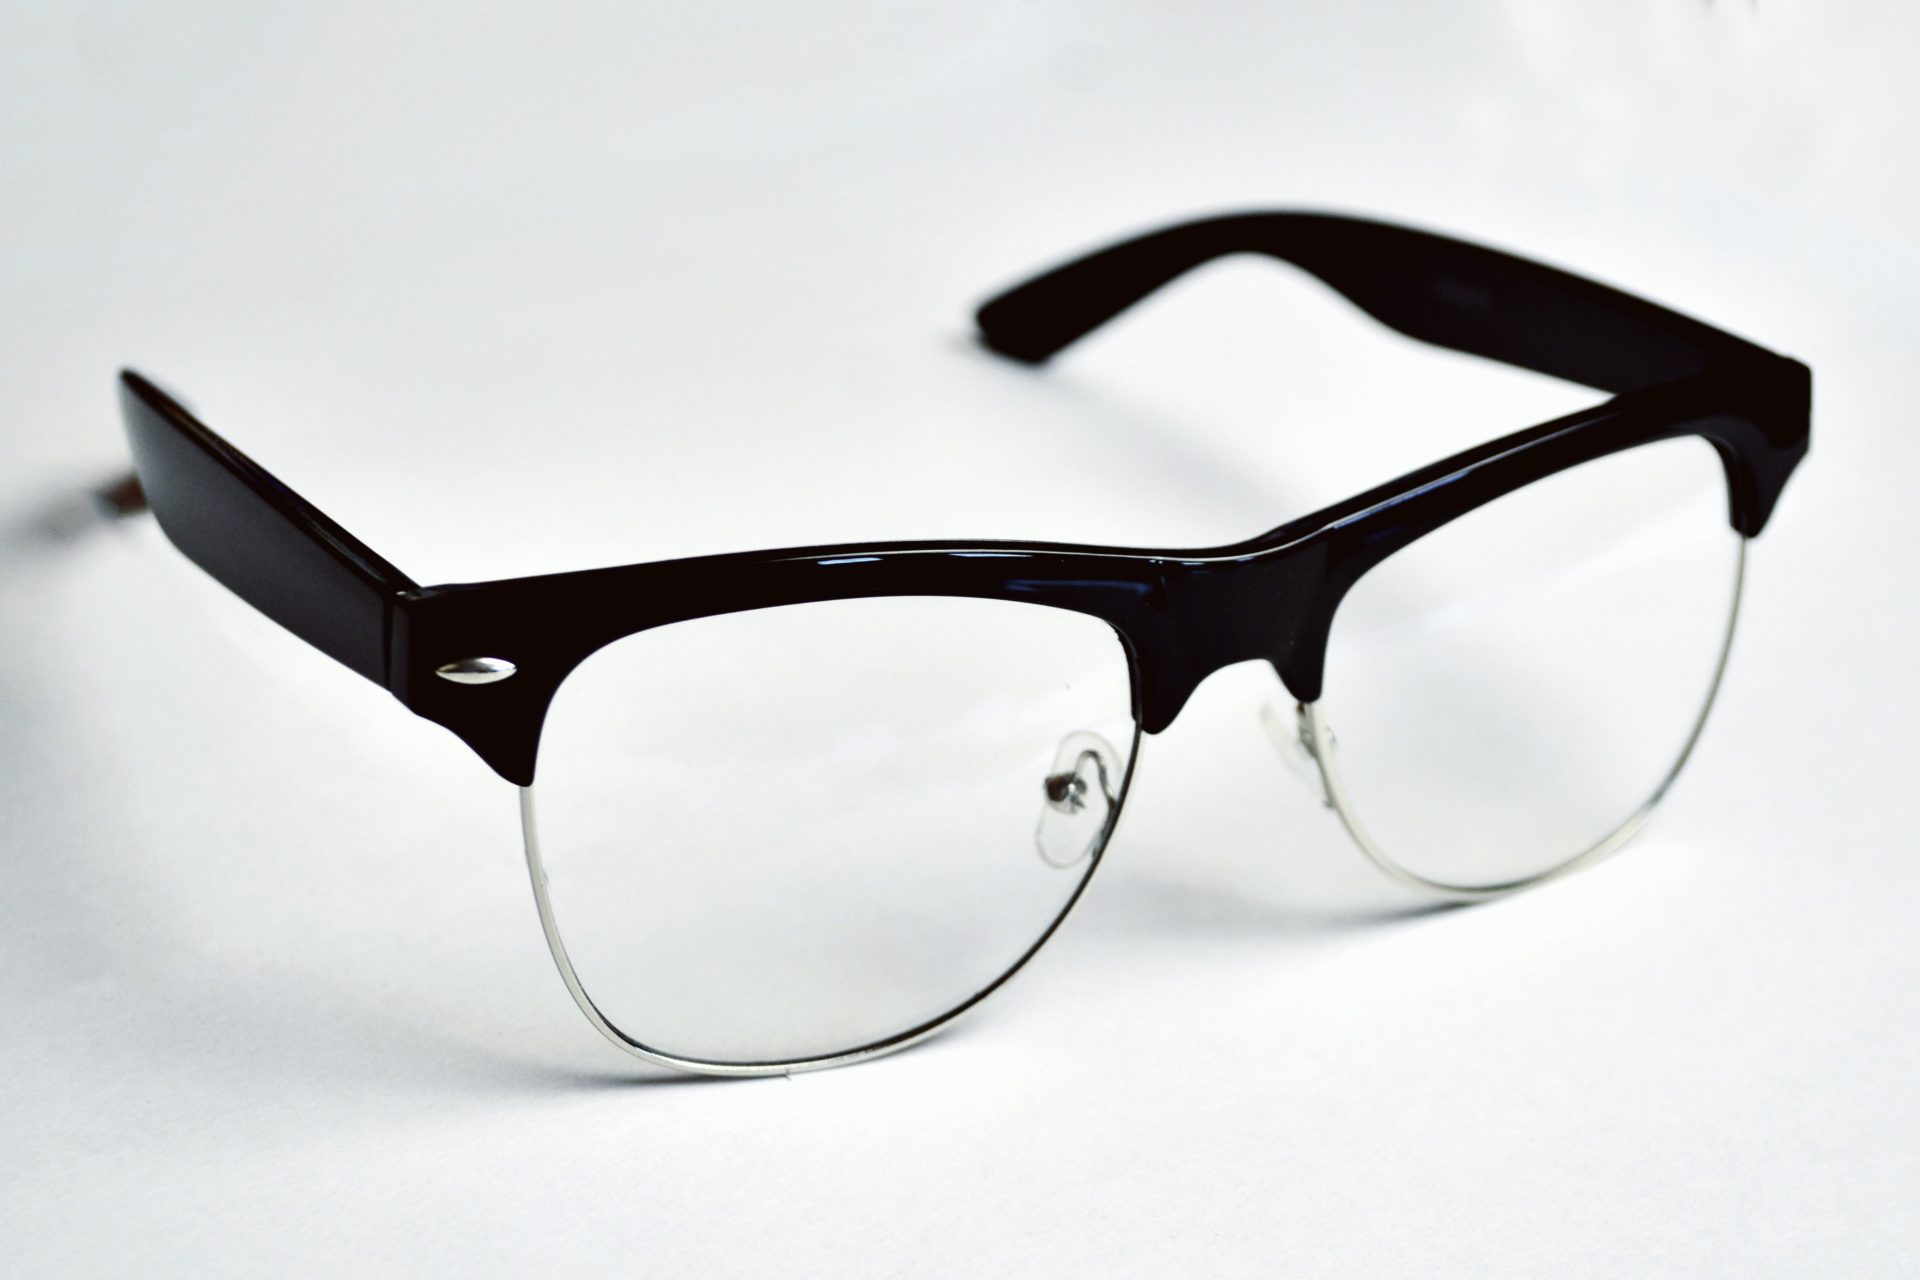 Crearon gafas con IA para que las personas ciegas puedan reconocer su entorno a través de sonidos